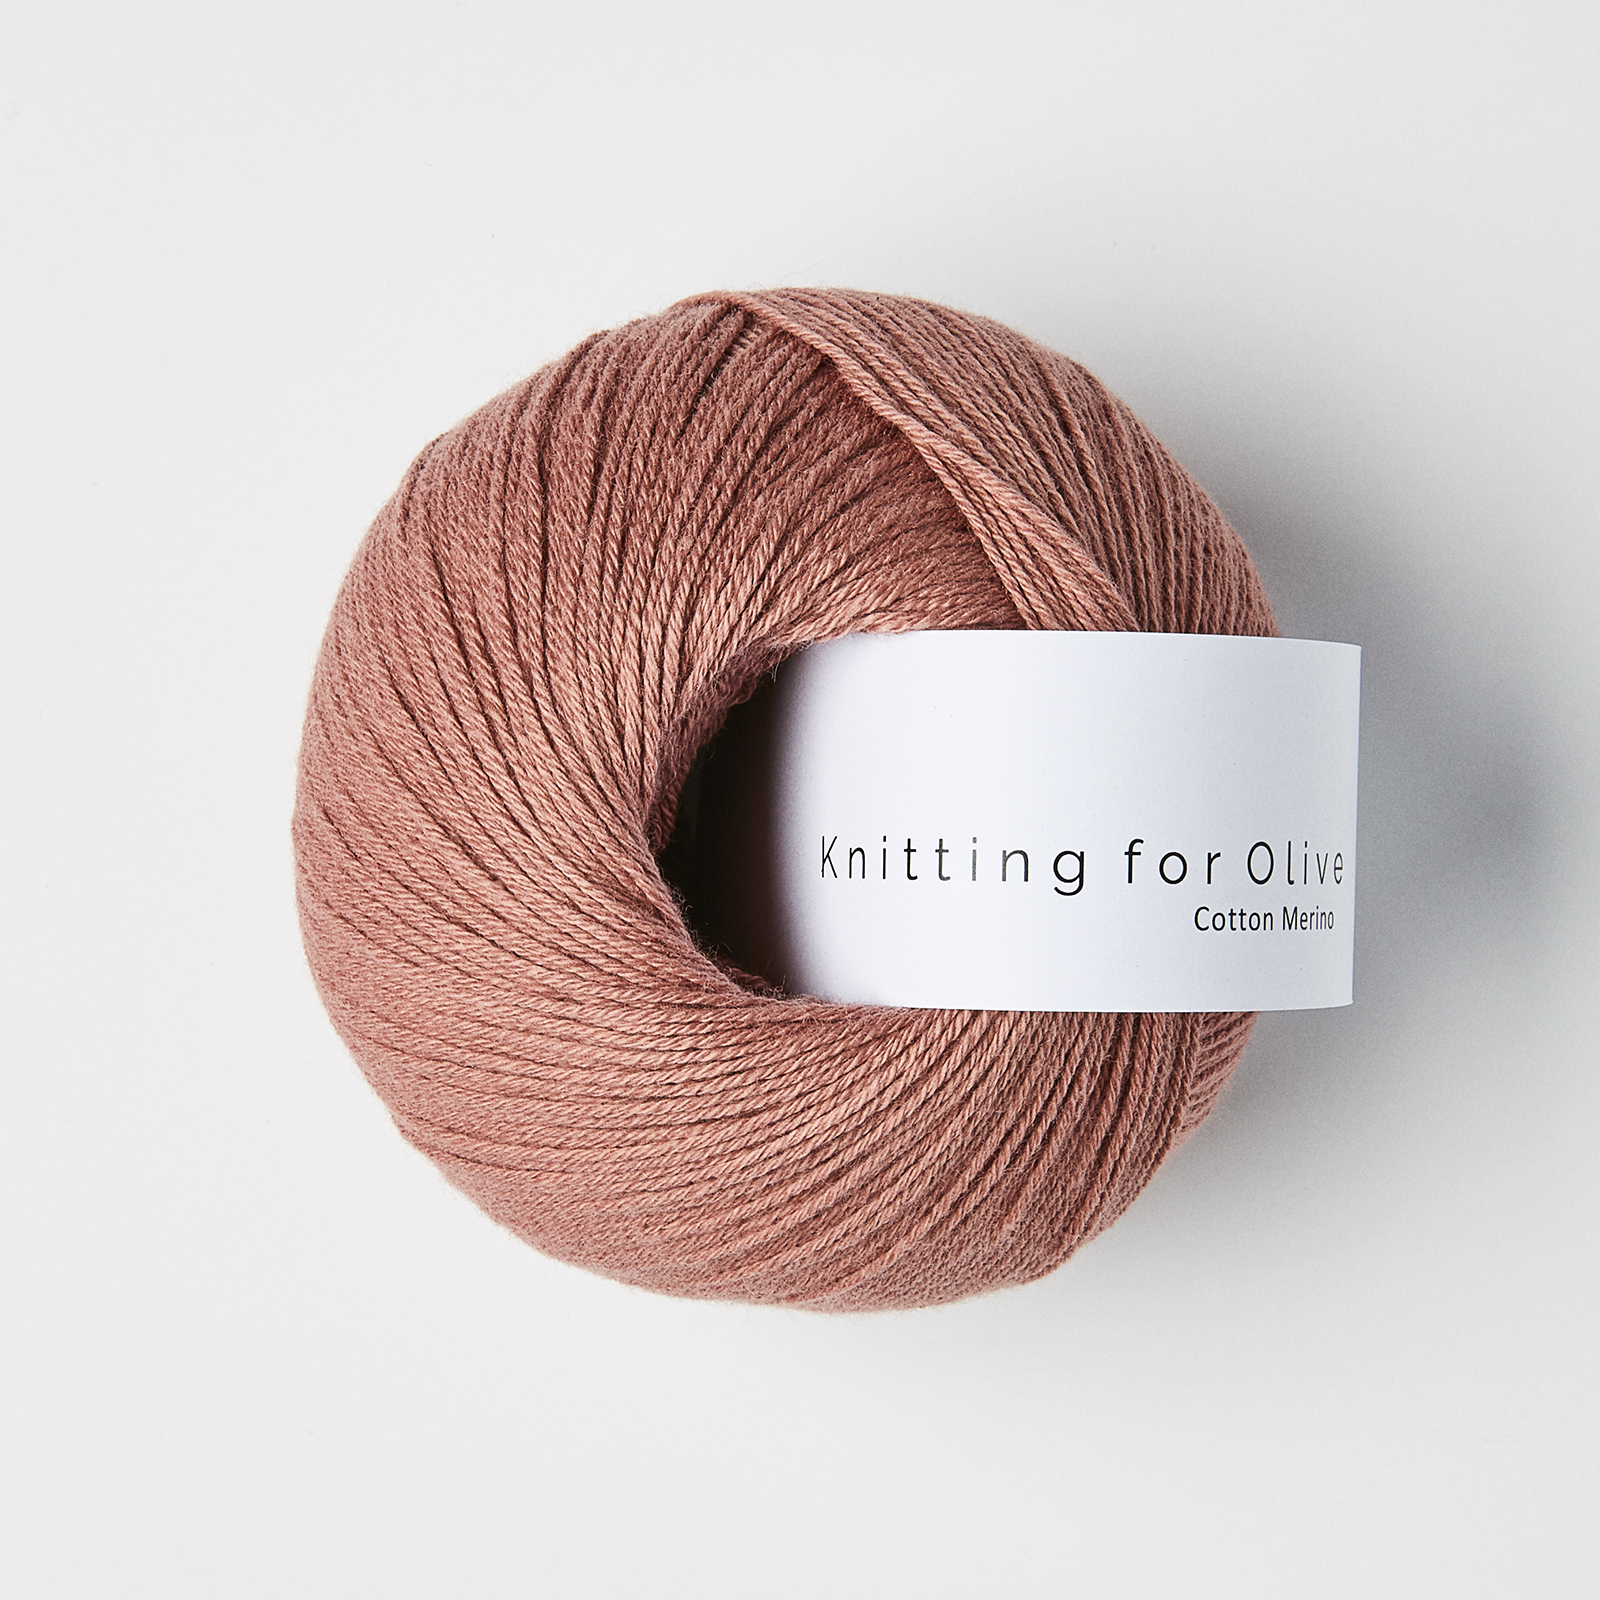 cotton merino knitting for olive | cotton merino: terracotta rose